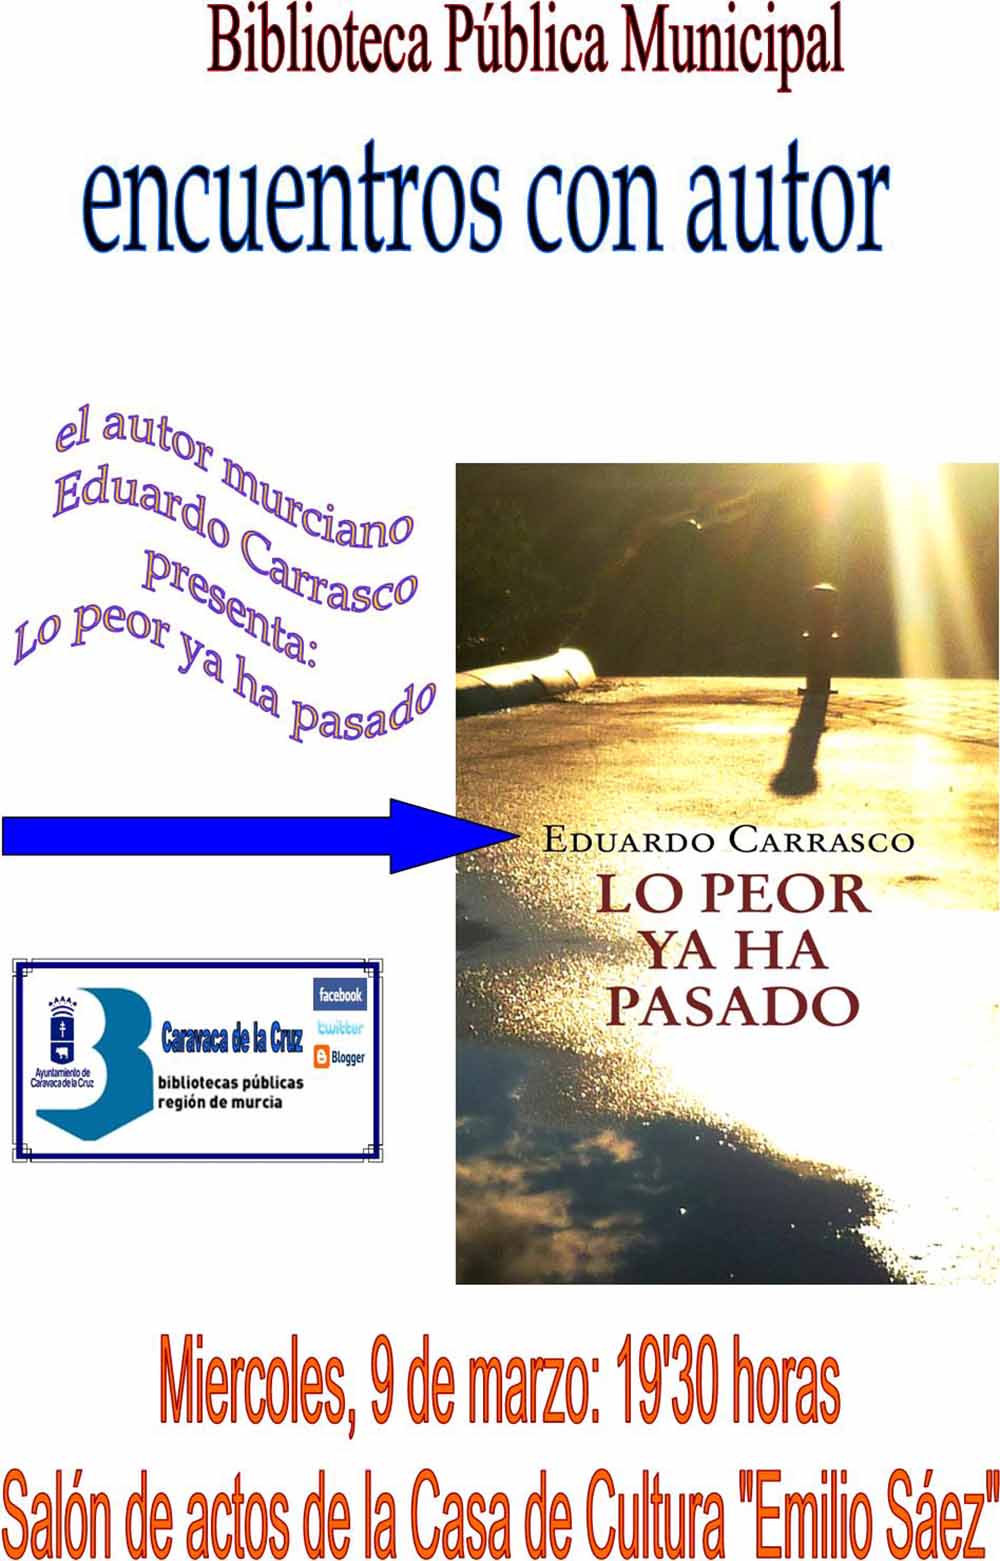 Eduardo Carrasco presenta mañana en Caravaca su libro ‘Lo peor ya ha pasado’